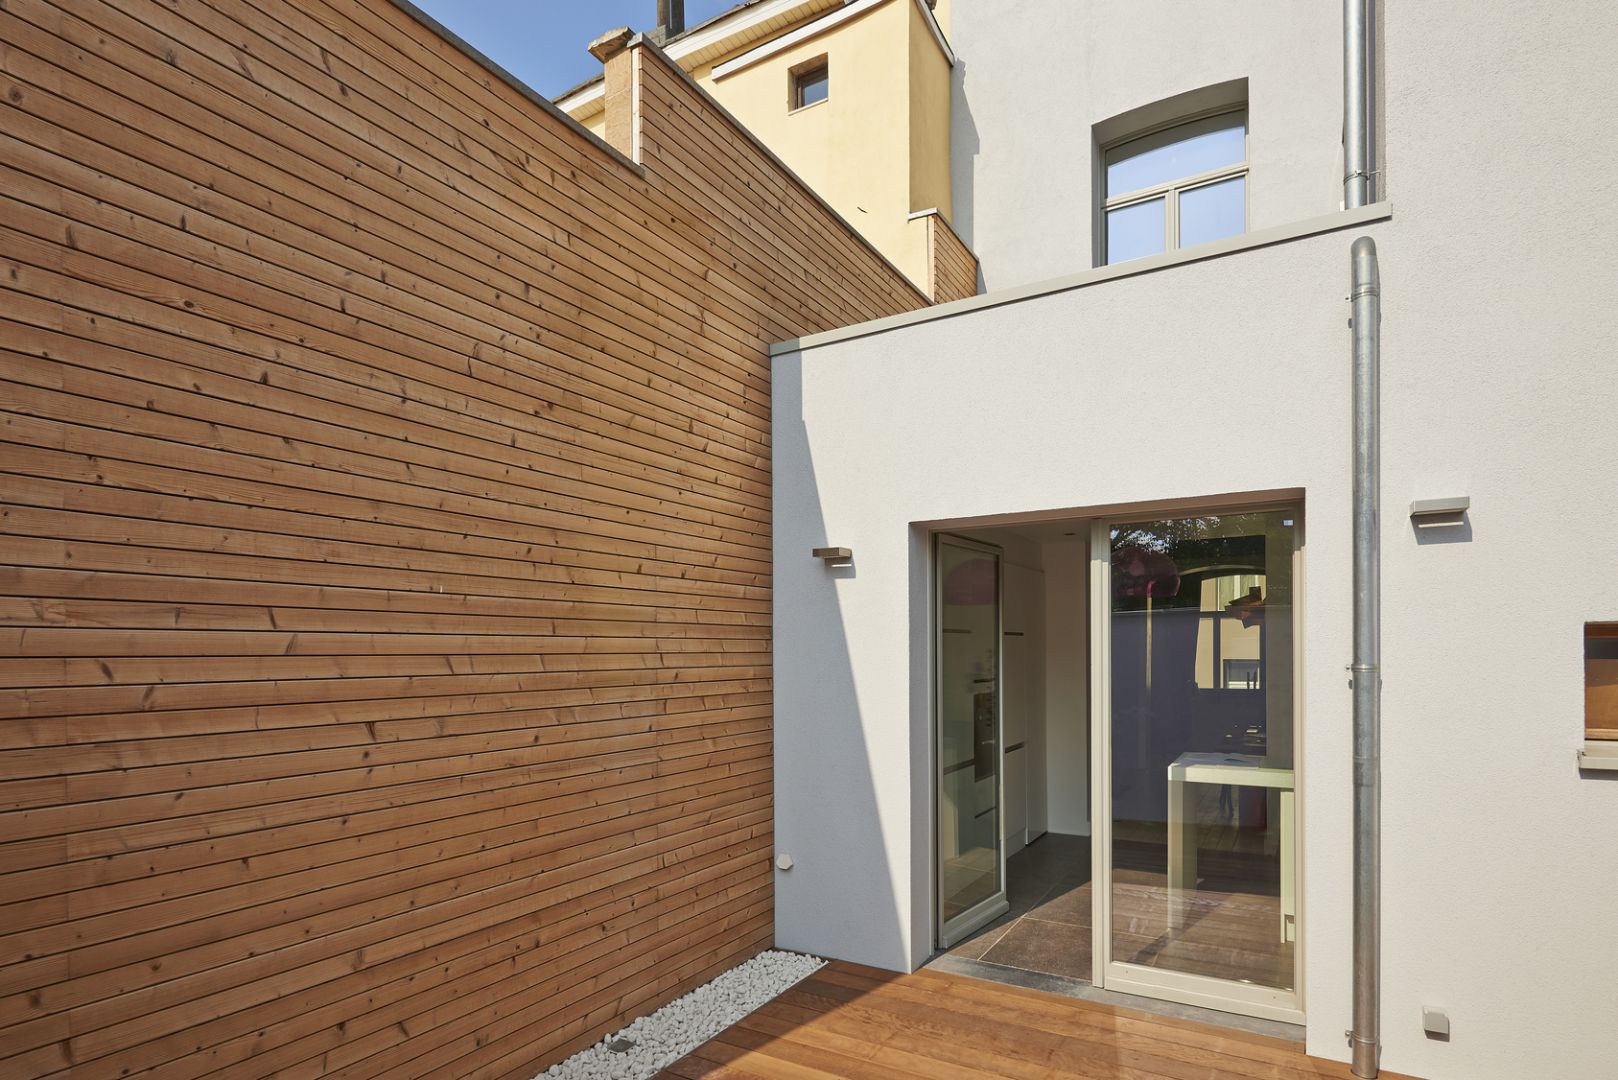 Naturalny urok drewna sprawia, że jest ono chętnie wykorzystywane na ścianach zewnętrznych domu. Fot. Fotolia